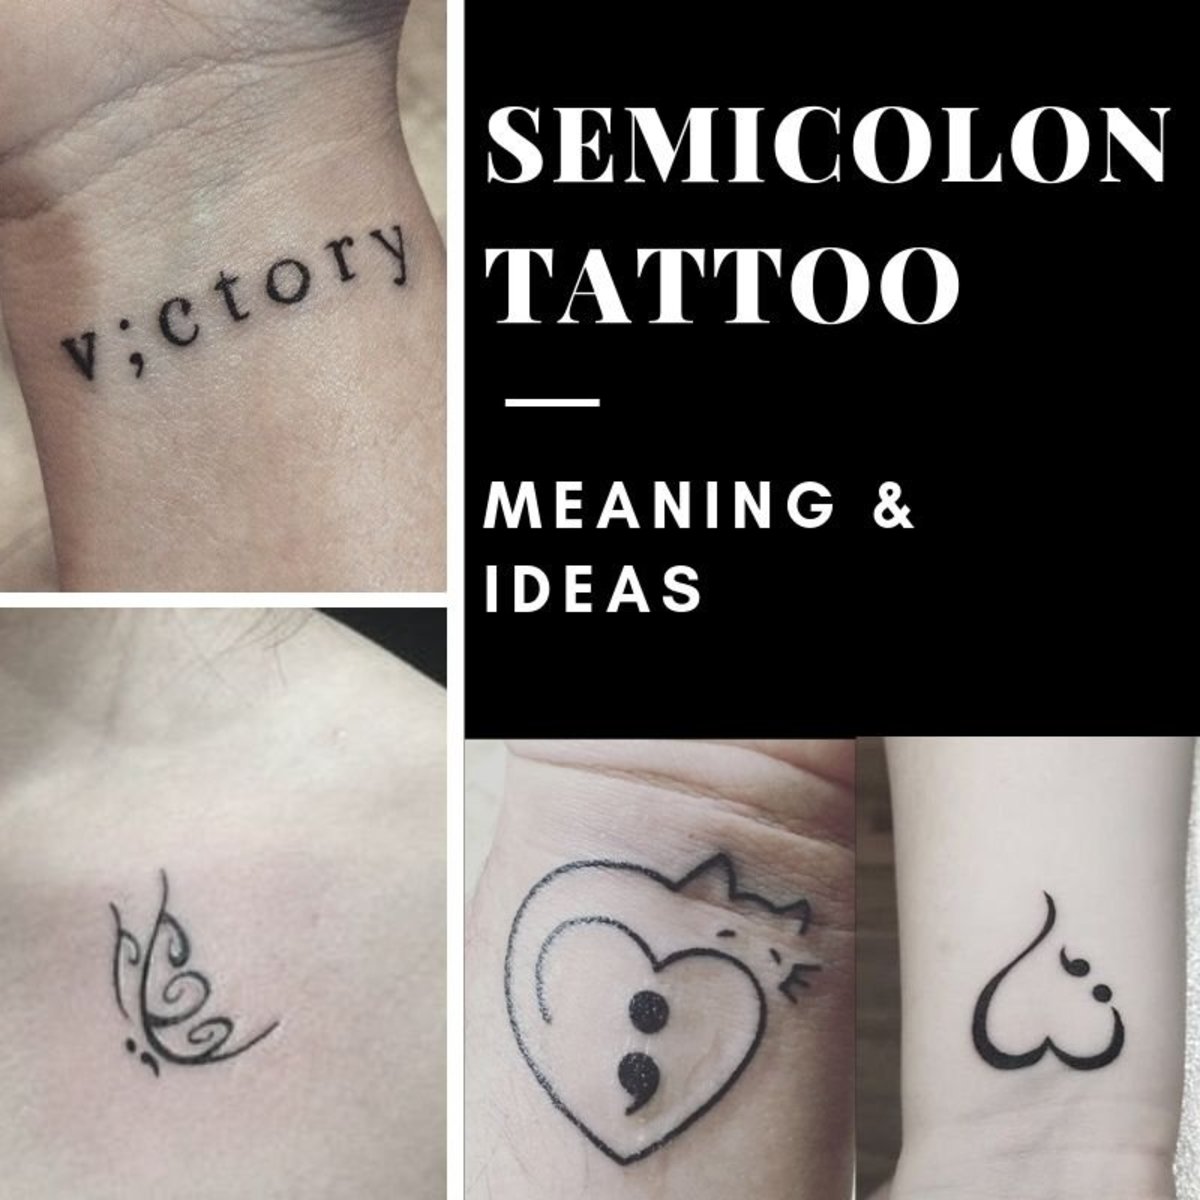 Zjistěte, co tetování středníkem znamená, a podívejte se na některé kreativní návrhy, do kterých je lidé začleňují.